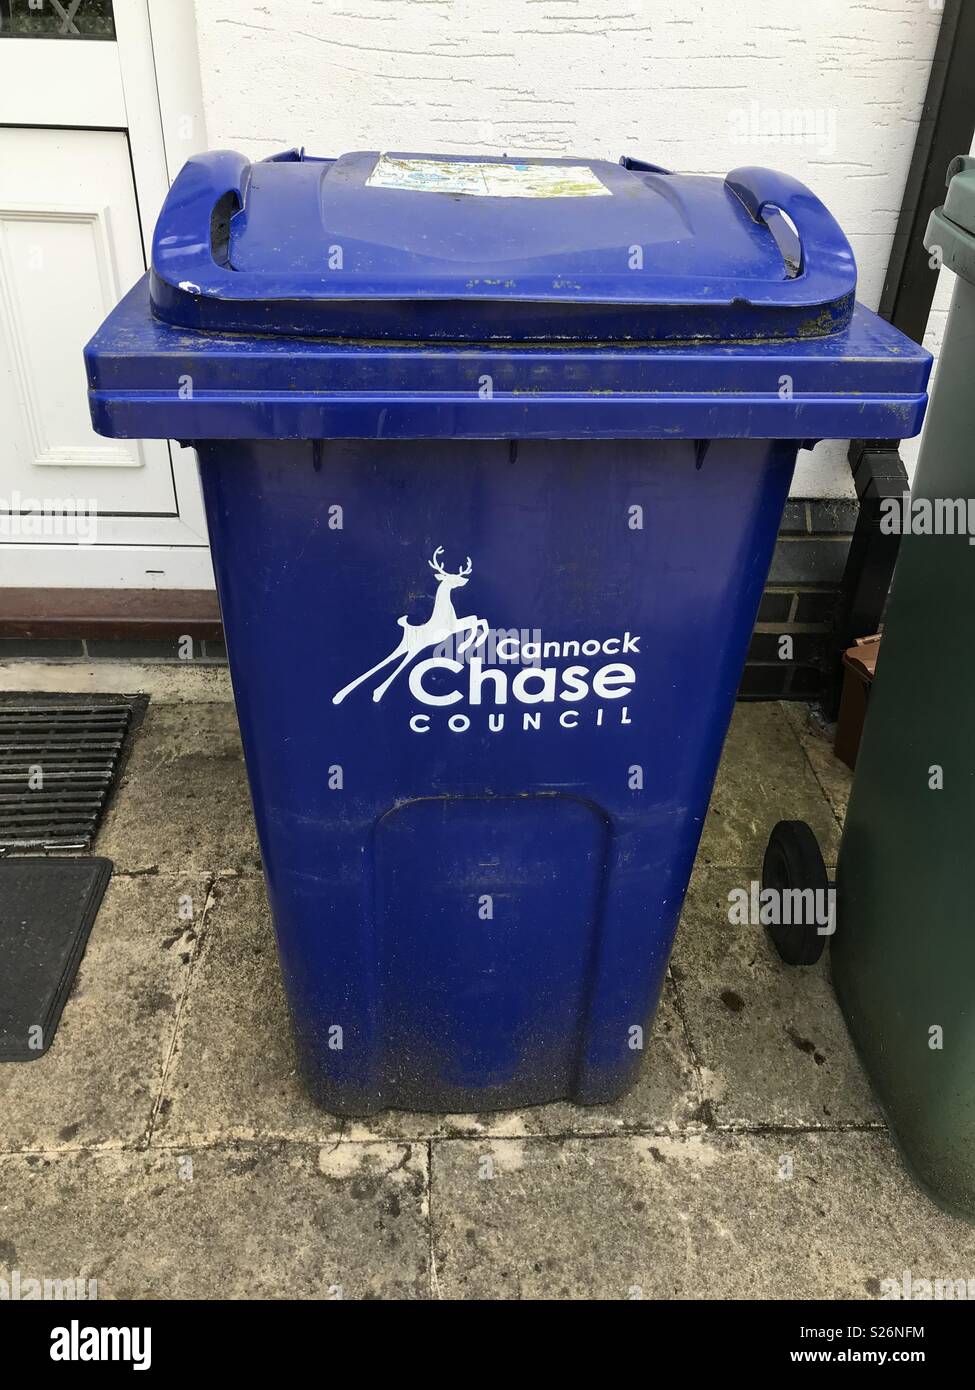 Cannock Chase bleu bac de recyclage Conseil Banque D'Images